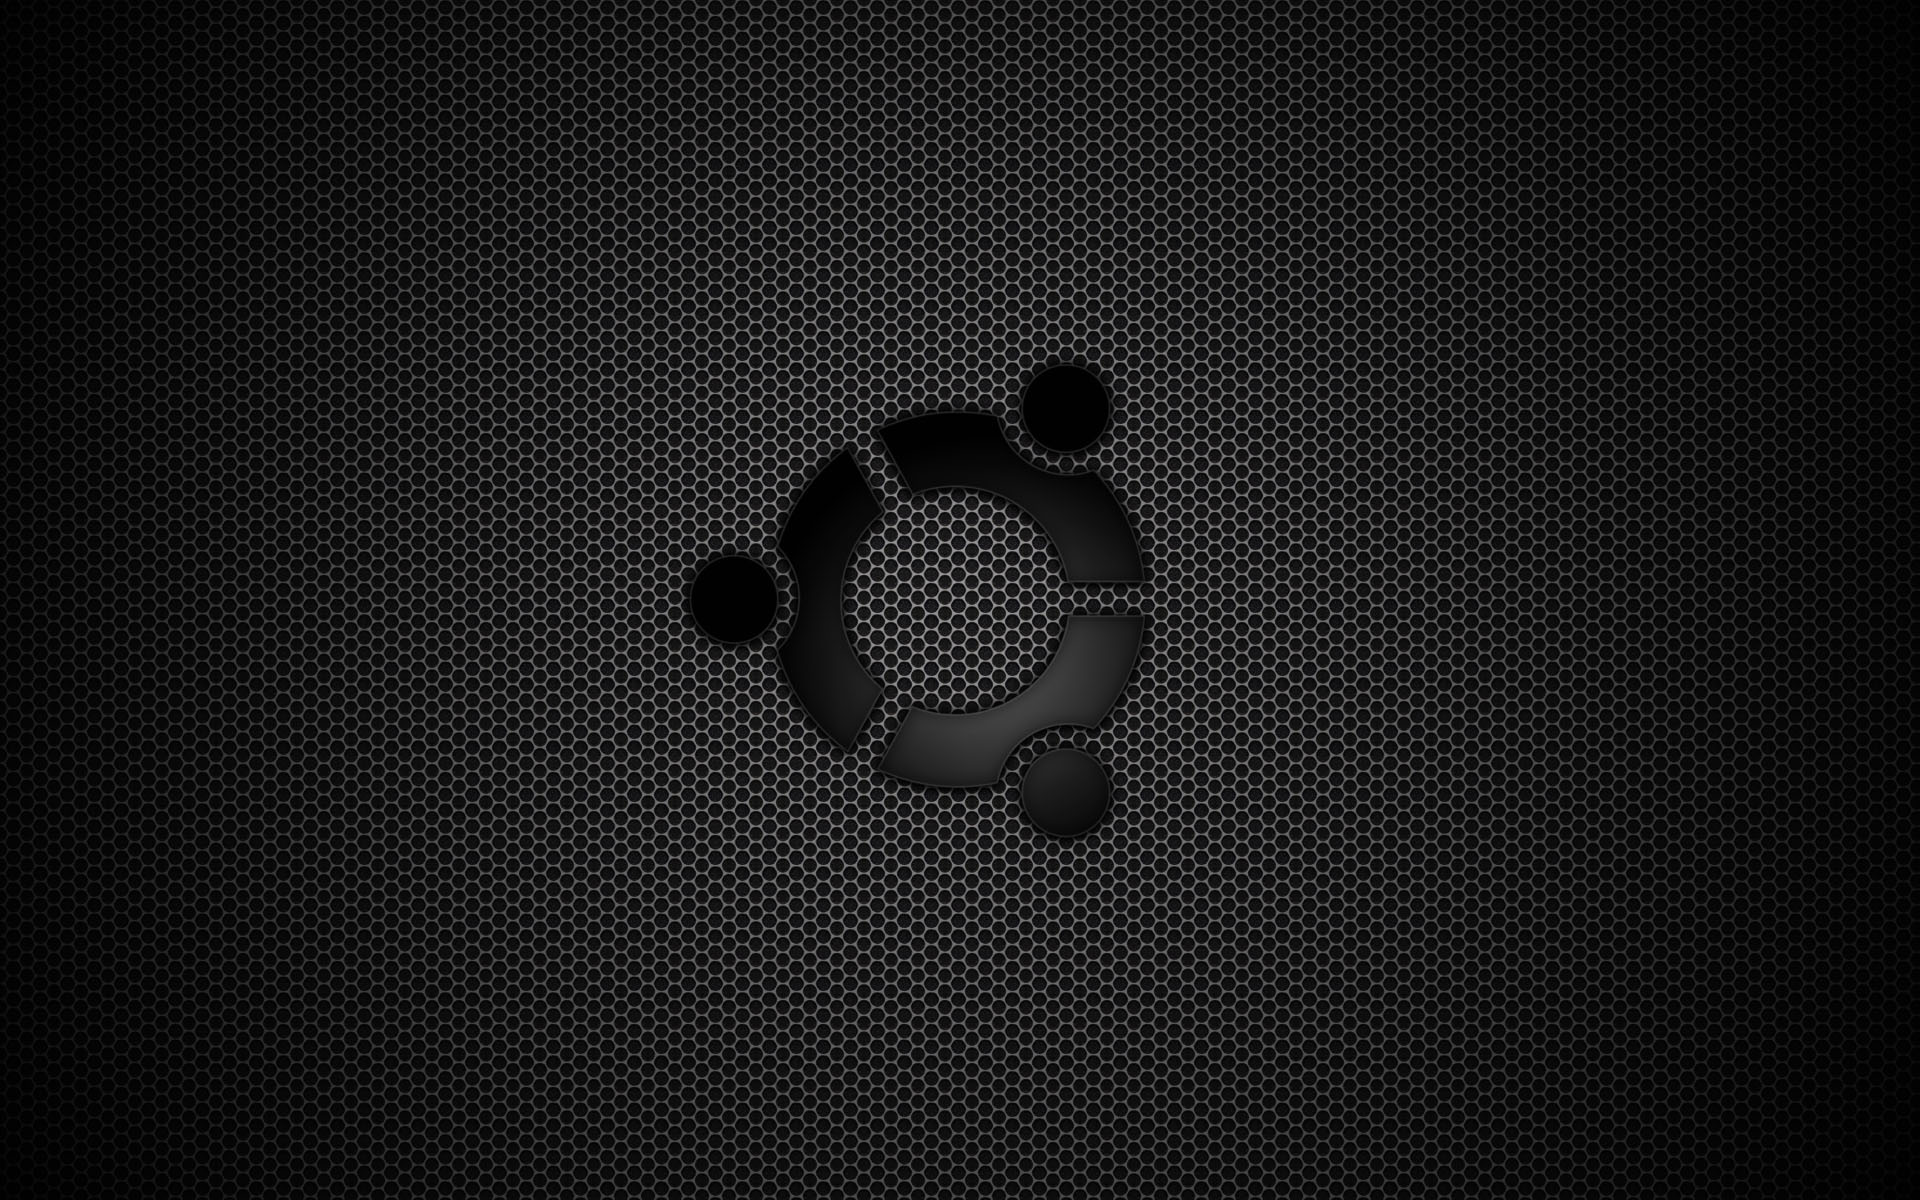  linux linux mint mint ubuntu wallpaper widescreen leave a comment